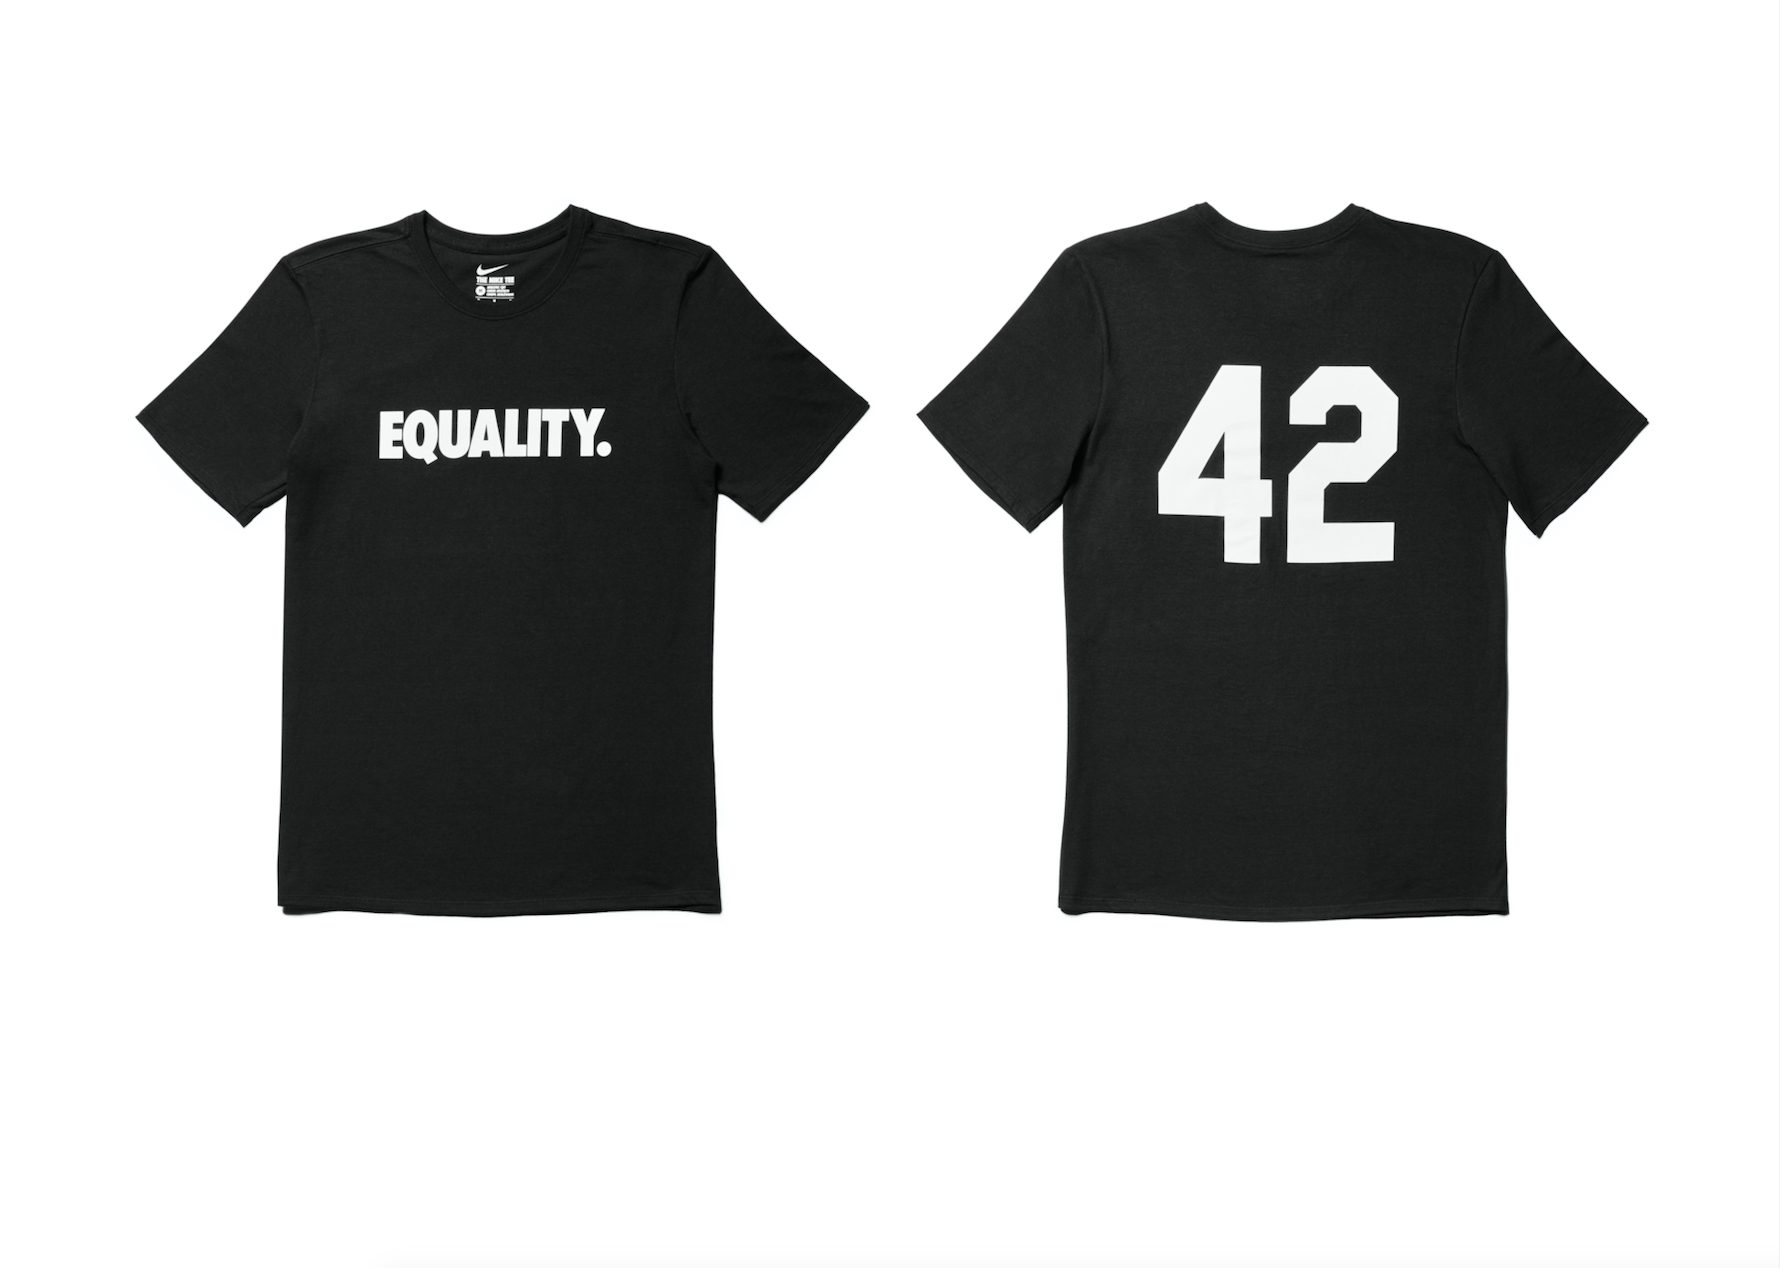 Nike Equality Tshirt jackie robinson